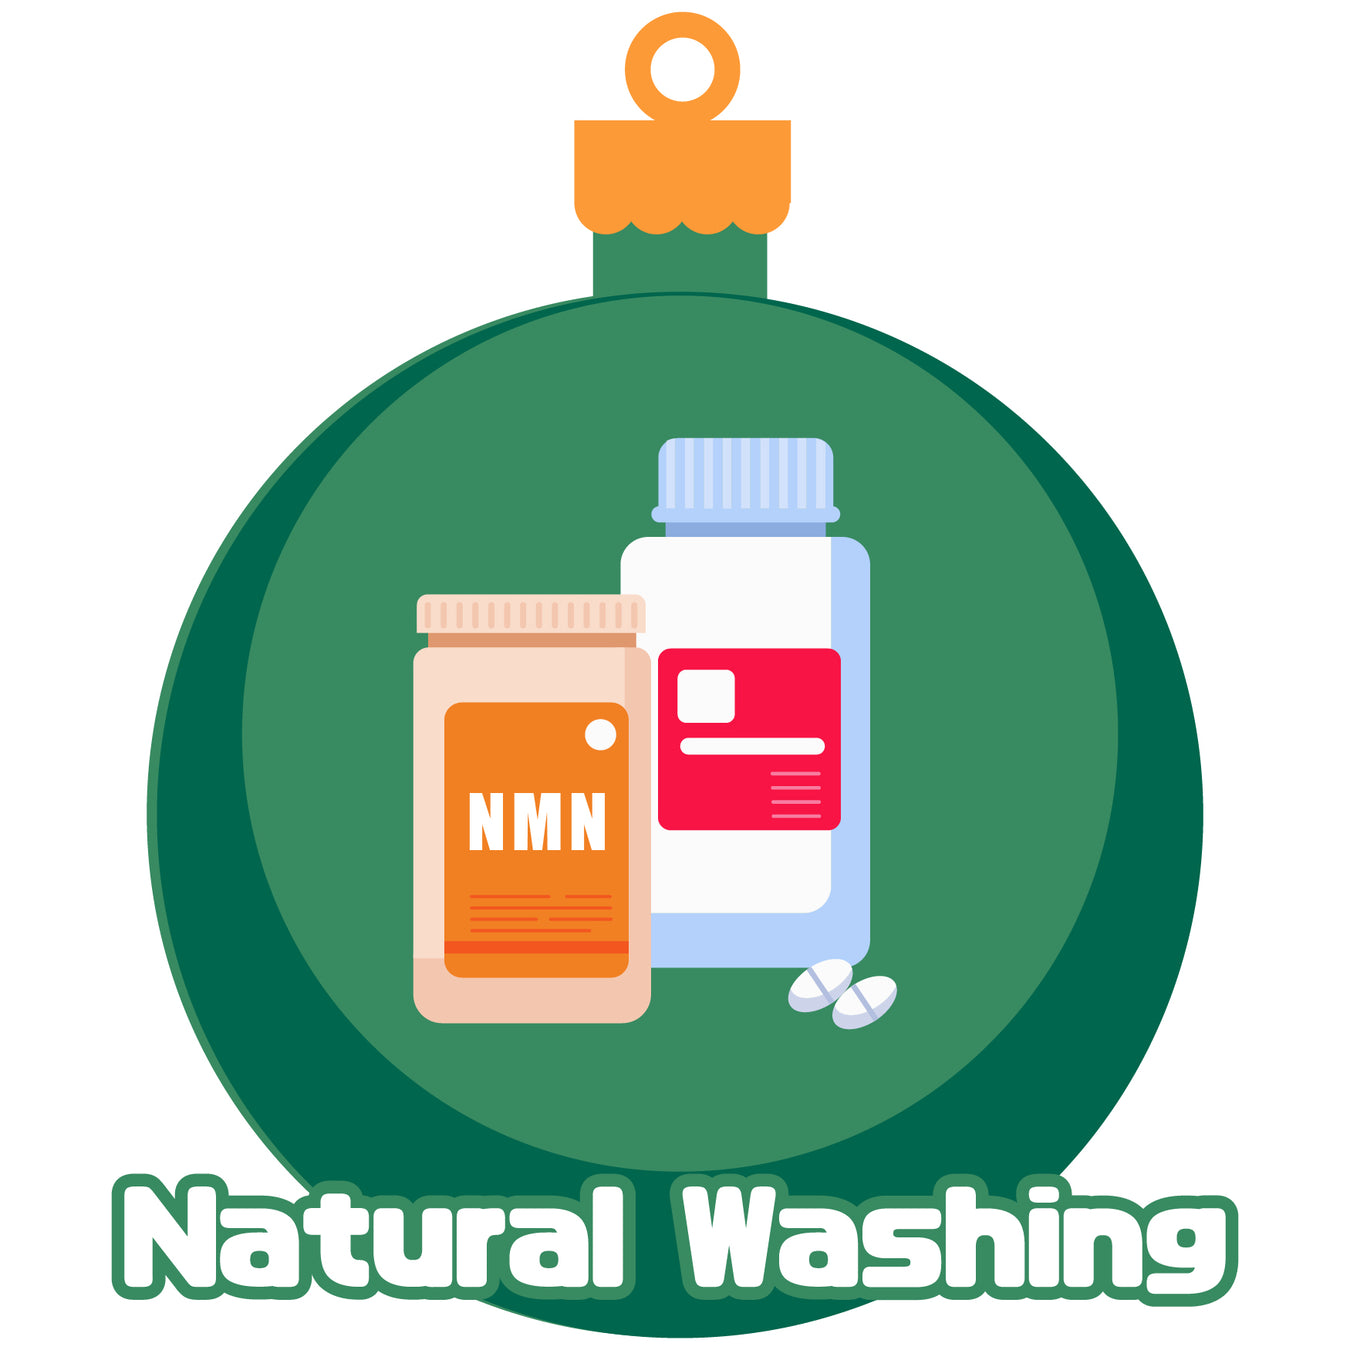 Natural Washing